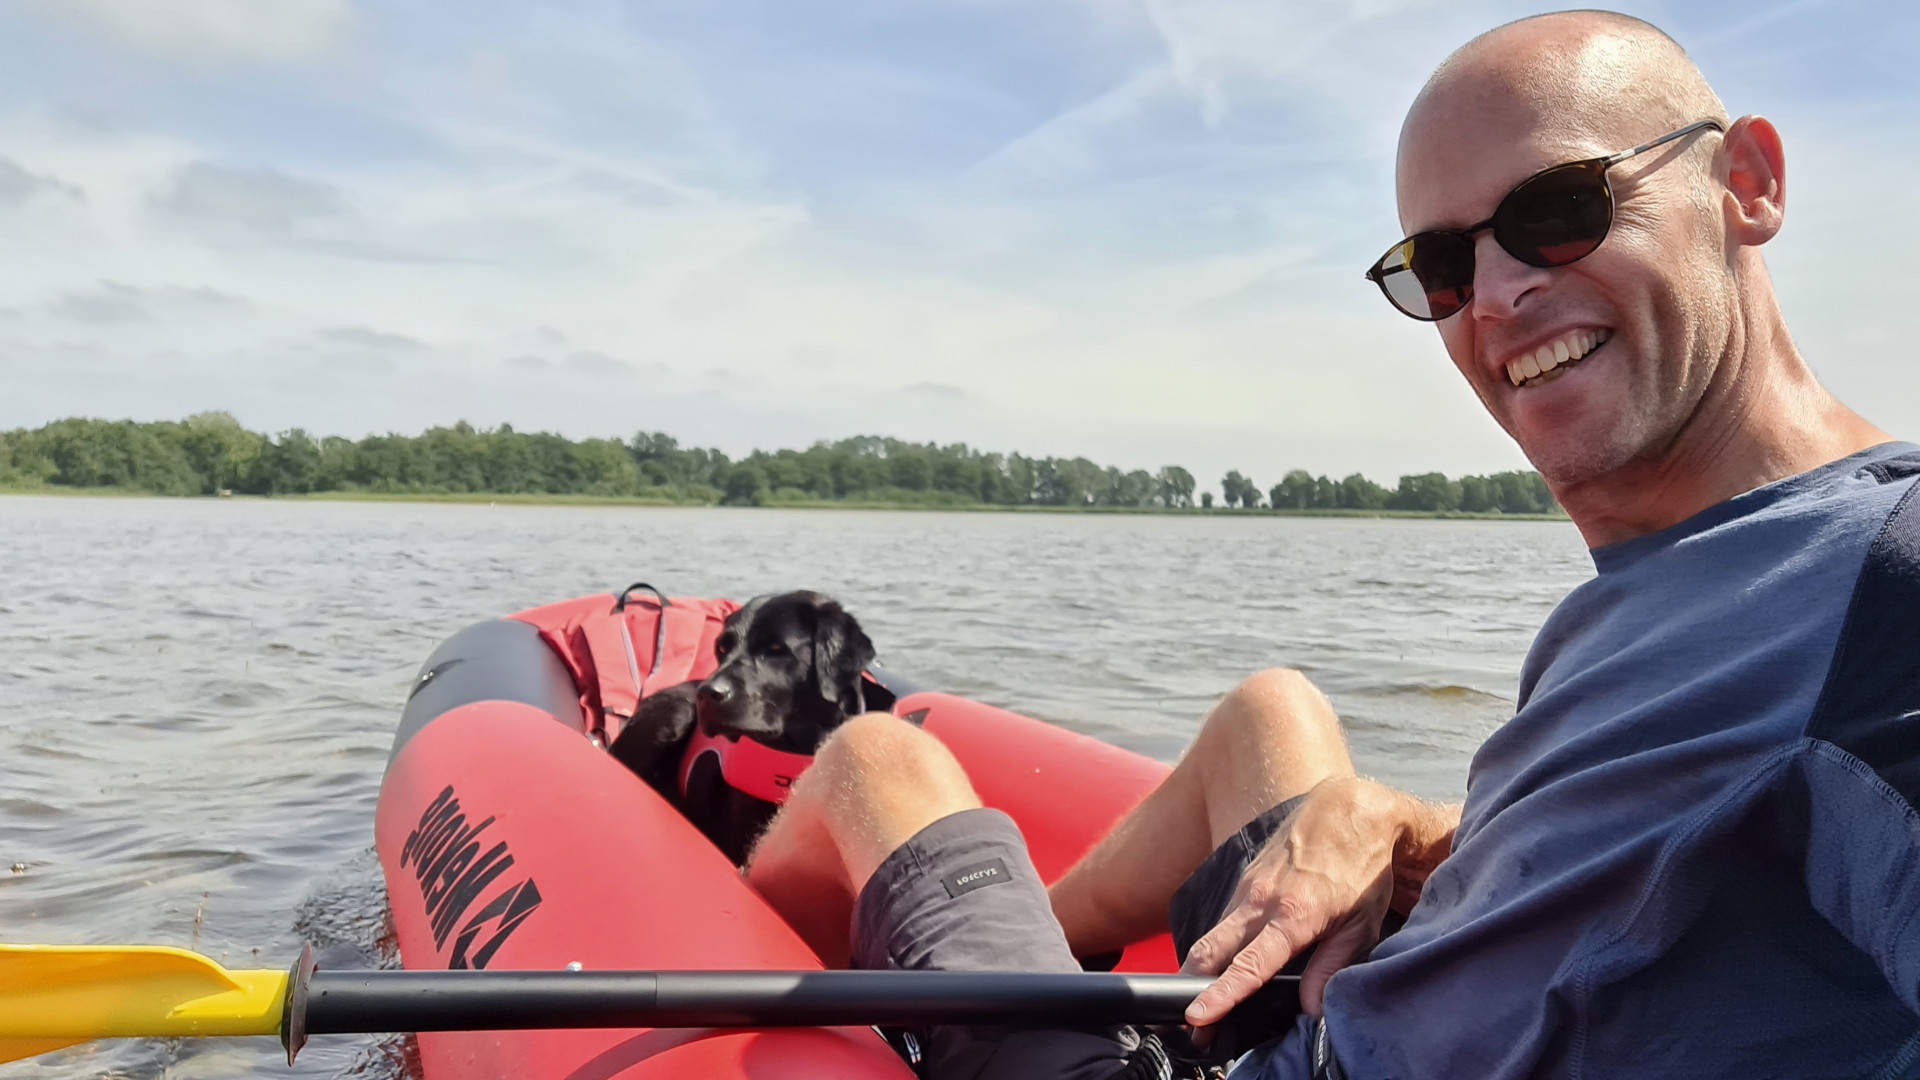 Peter-Paul en zijn buddyhond samen in de boot